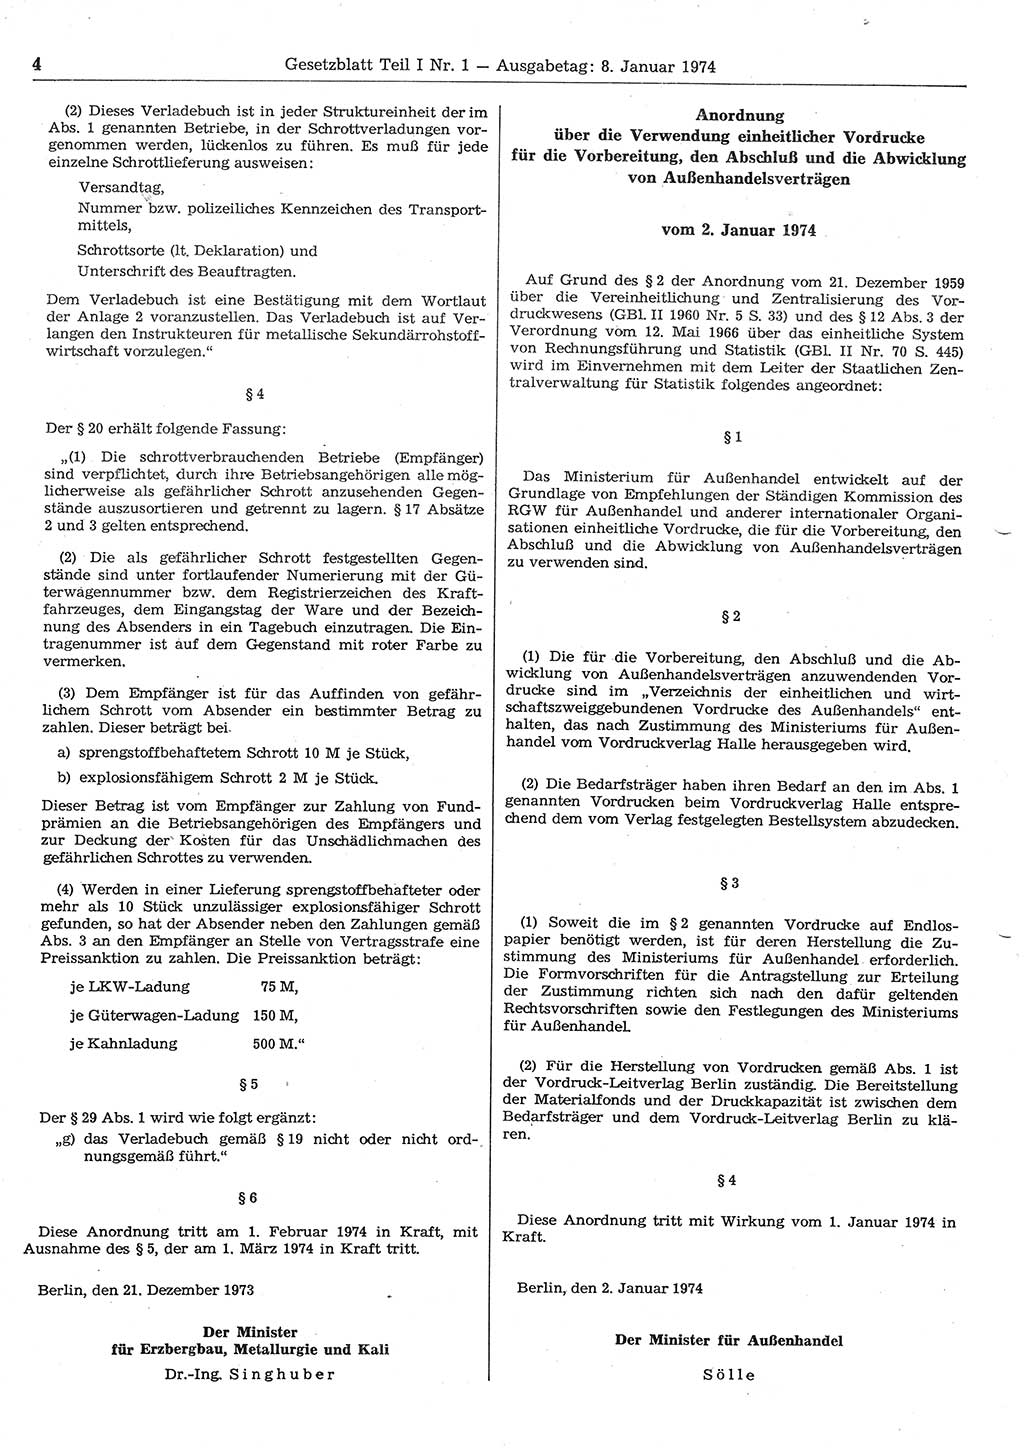 Gesetzblatt (GBl.) der Deutschen Demokratischen Republik (DDR) Teil Ⅰ 1974, Seite 4 (GBl. DDR Ⅰ 1974, S. 4)